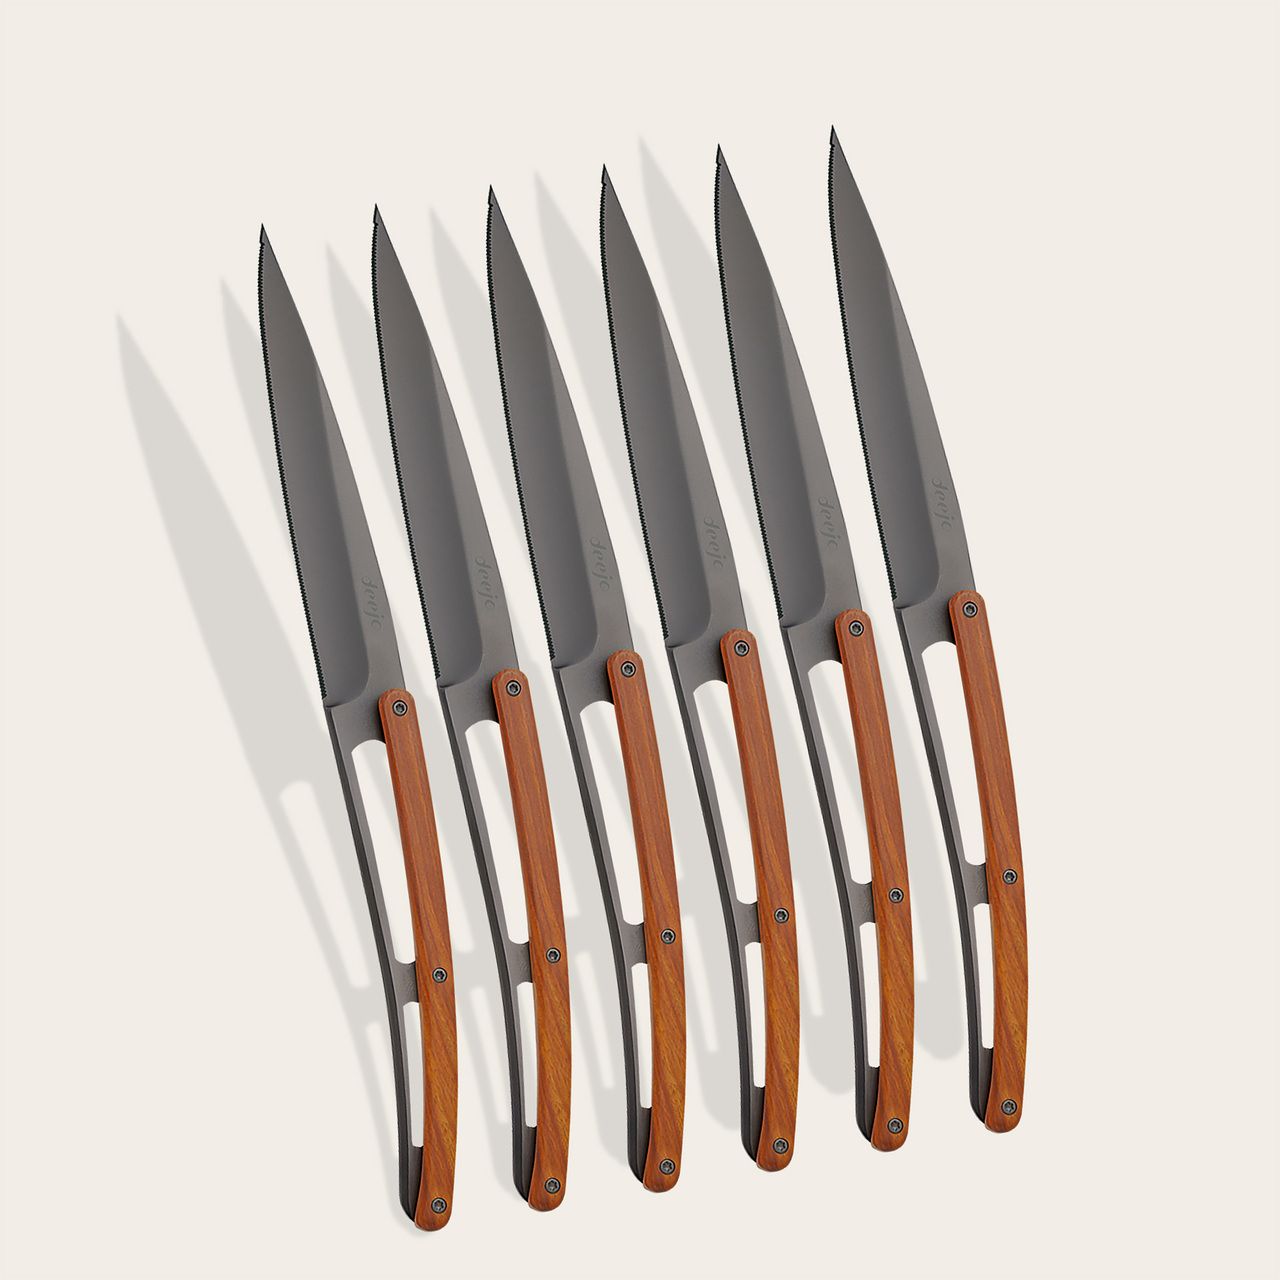 6 Deejo steak knives, Coral wood - STEAK KNIVES - TABLEWARE & KITCHEN